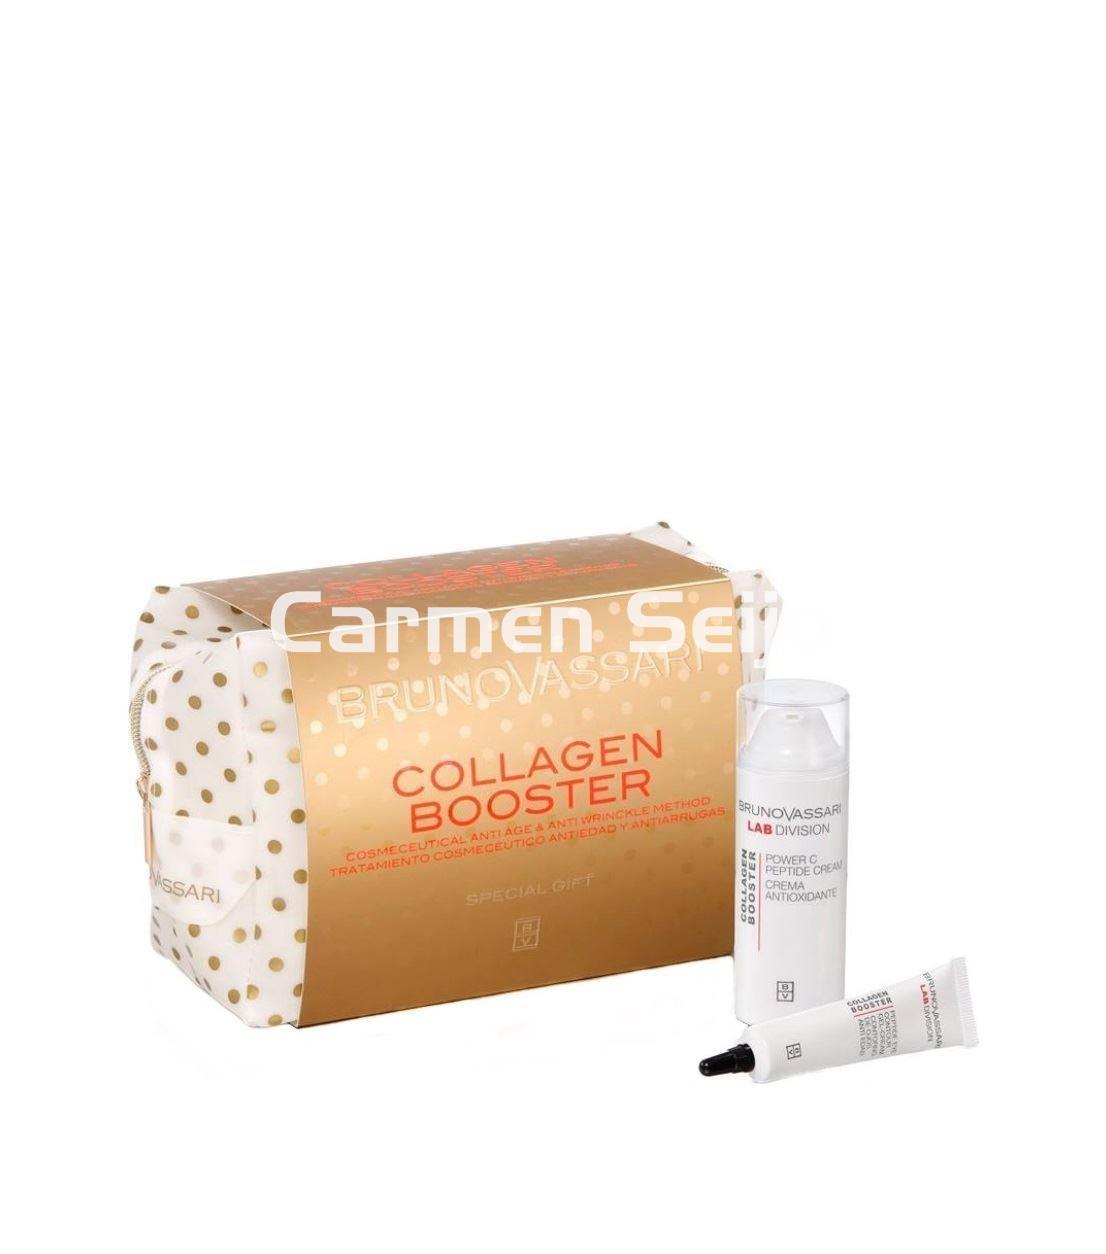 Bruno Vassari Pack Tratamiento Collagen Booster** - Imagen 1